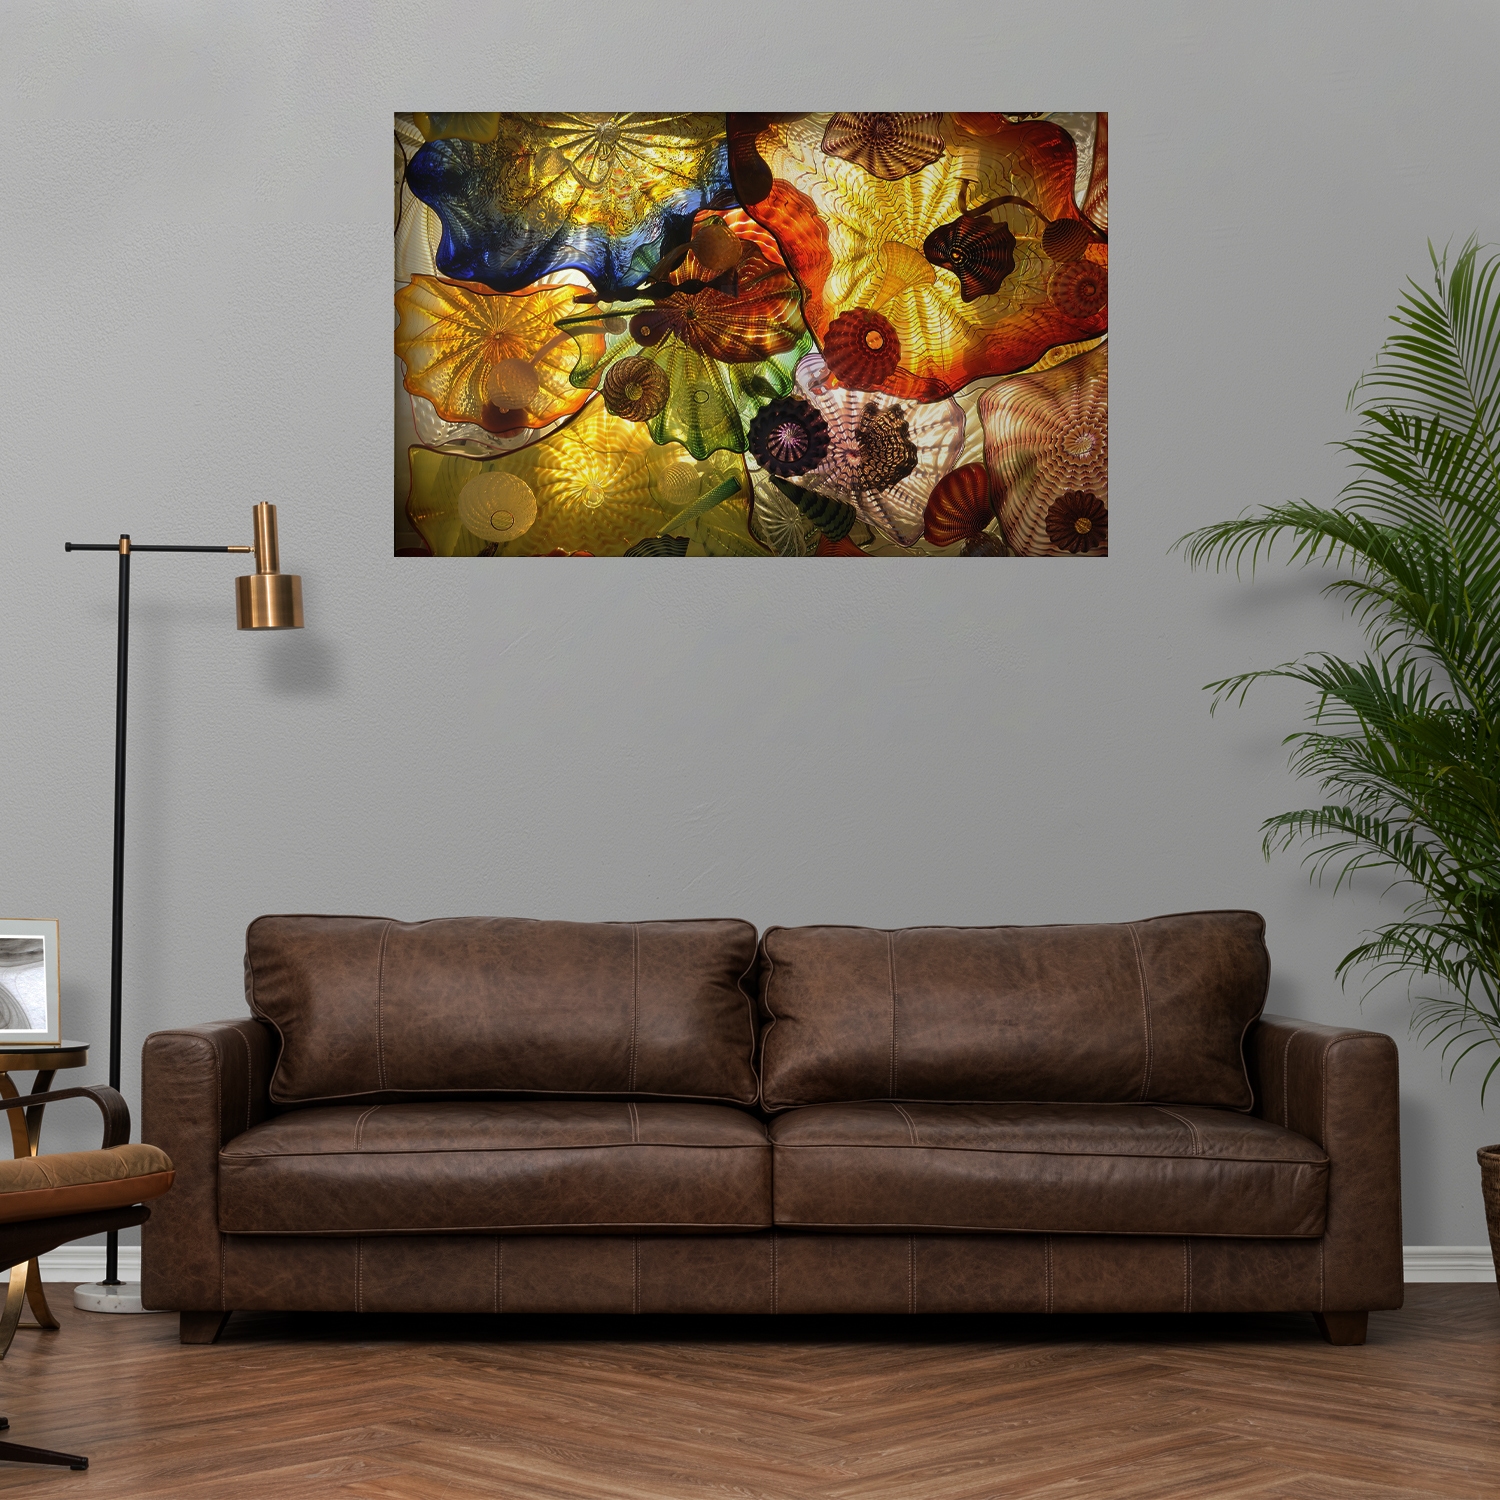 Tablou canvas Meduze in culori, CT0293, Picma, standard, panza + sasiu lemn, 40 x 60 cm